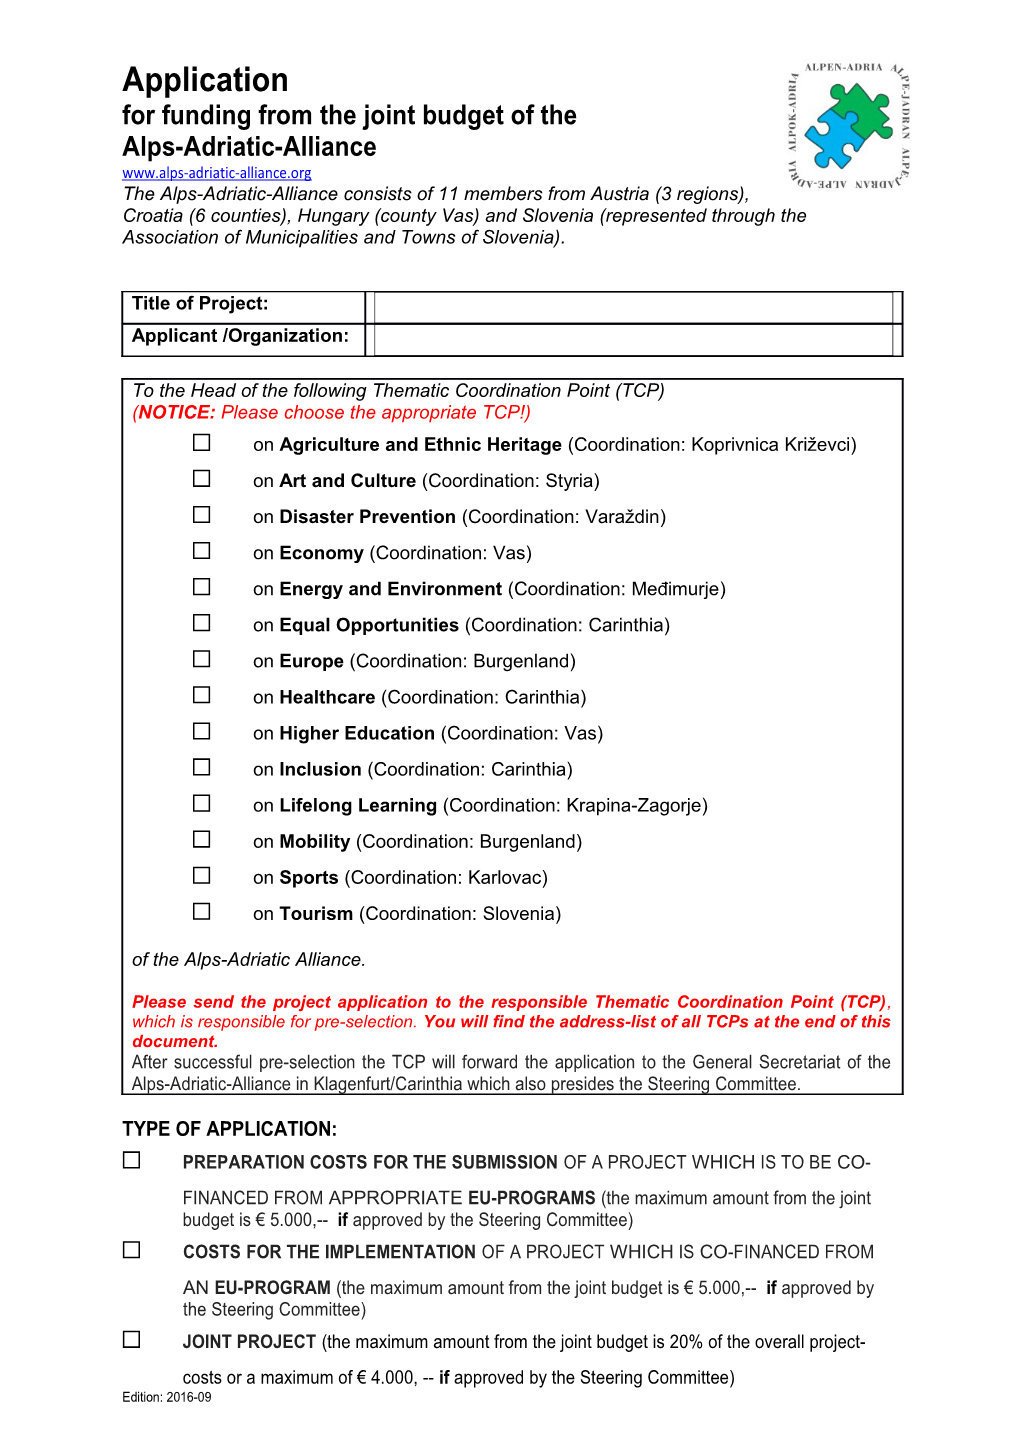 AAA Application Form